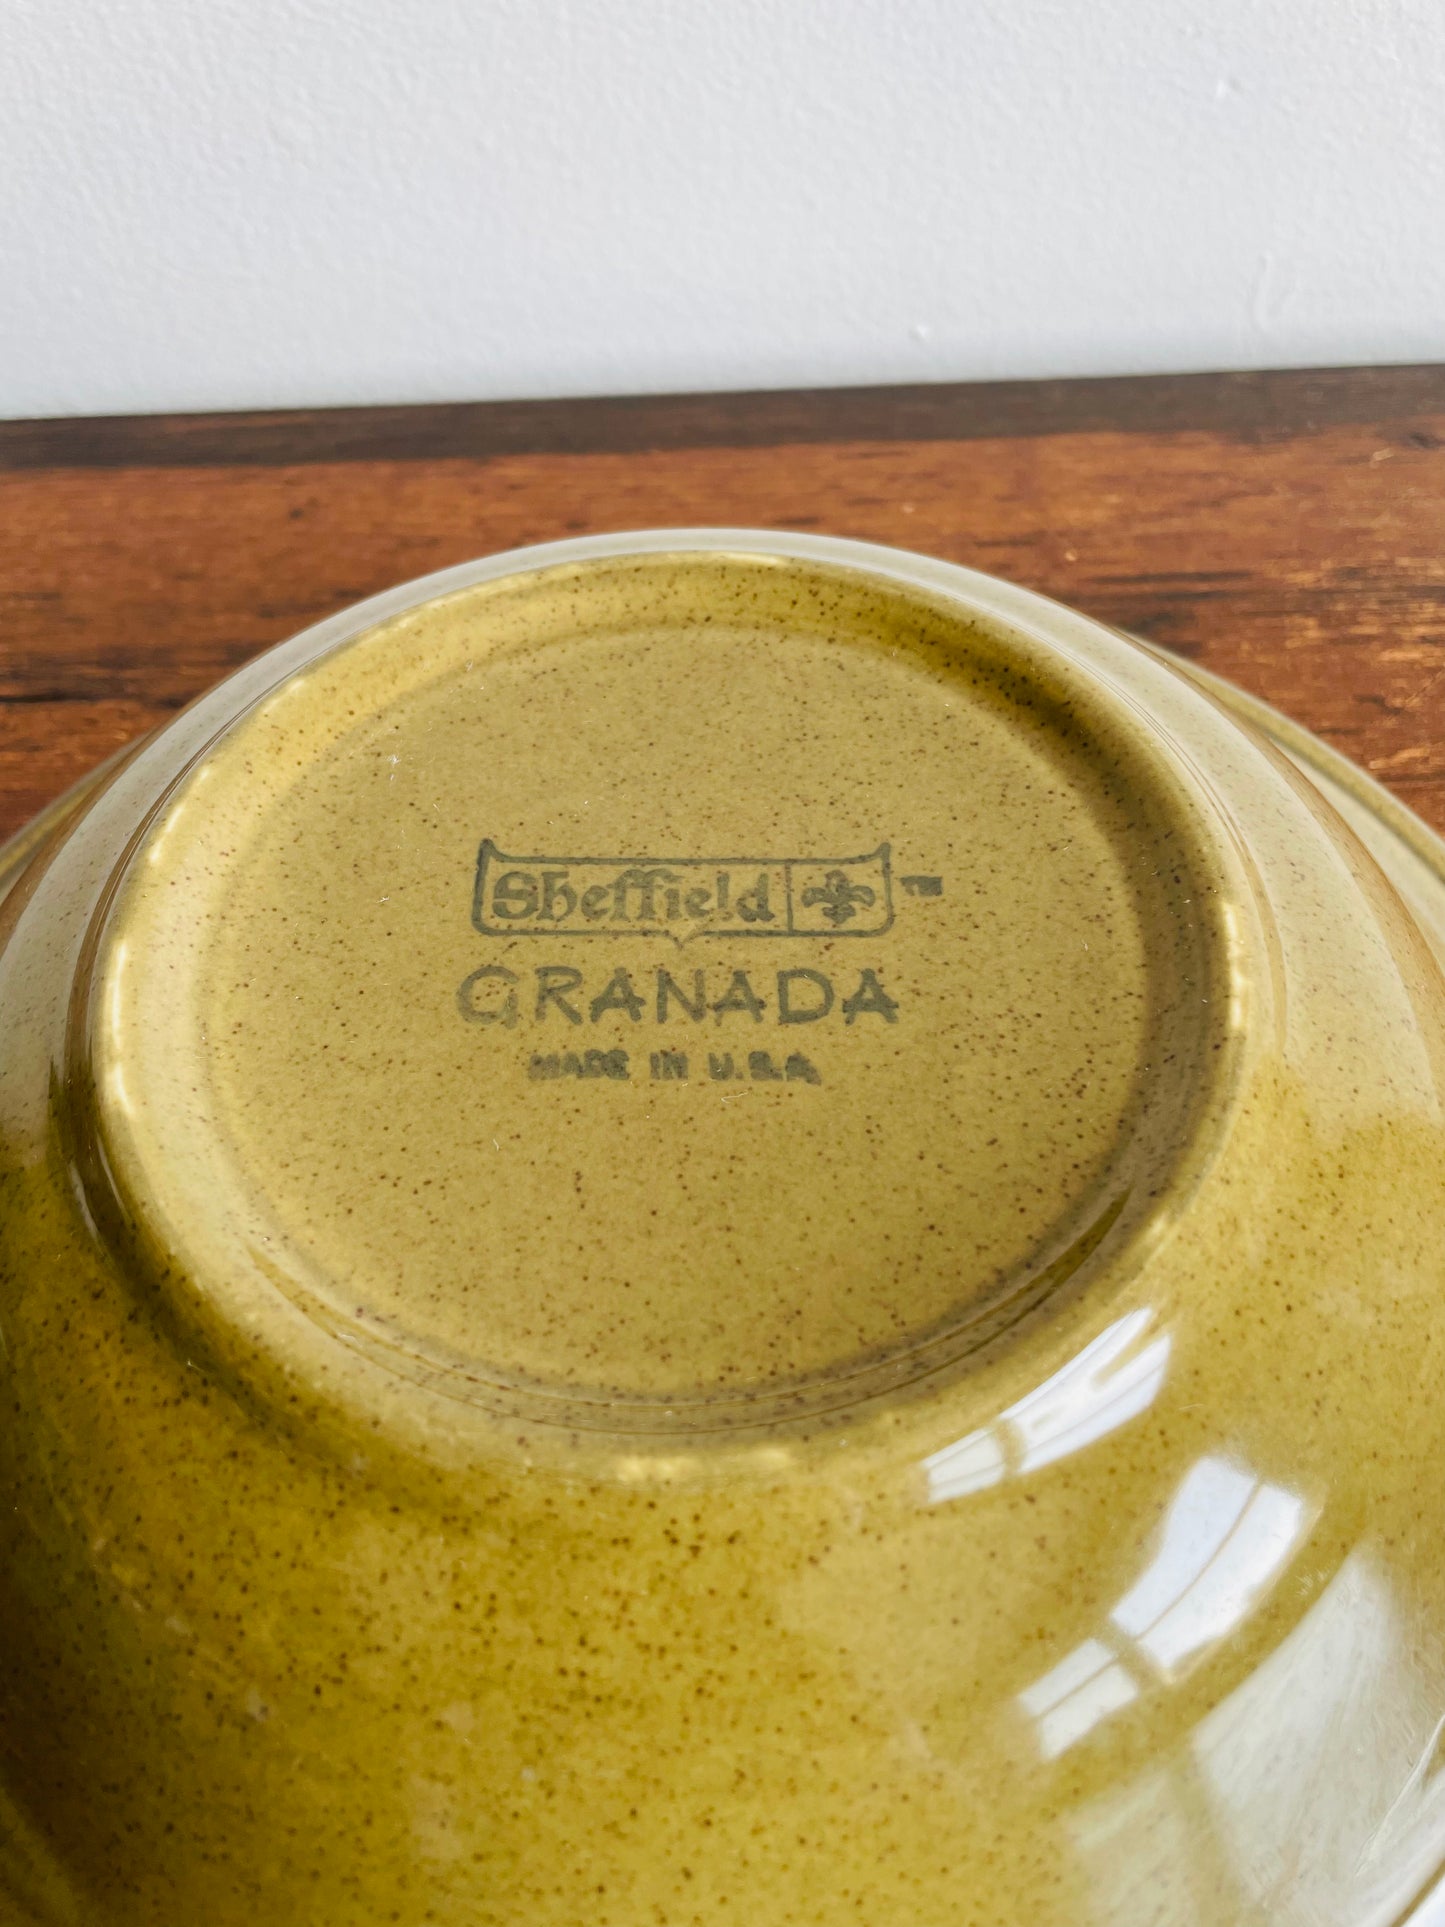 Sheffield Granada Green Bowl with Pretty Scalloped Design on Rim - Made in USA